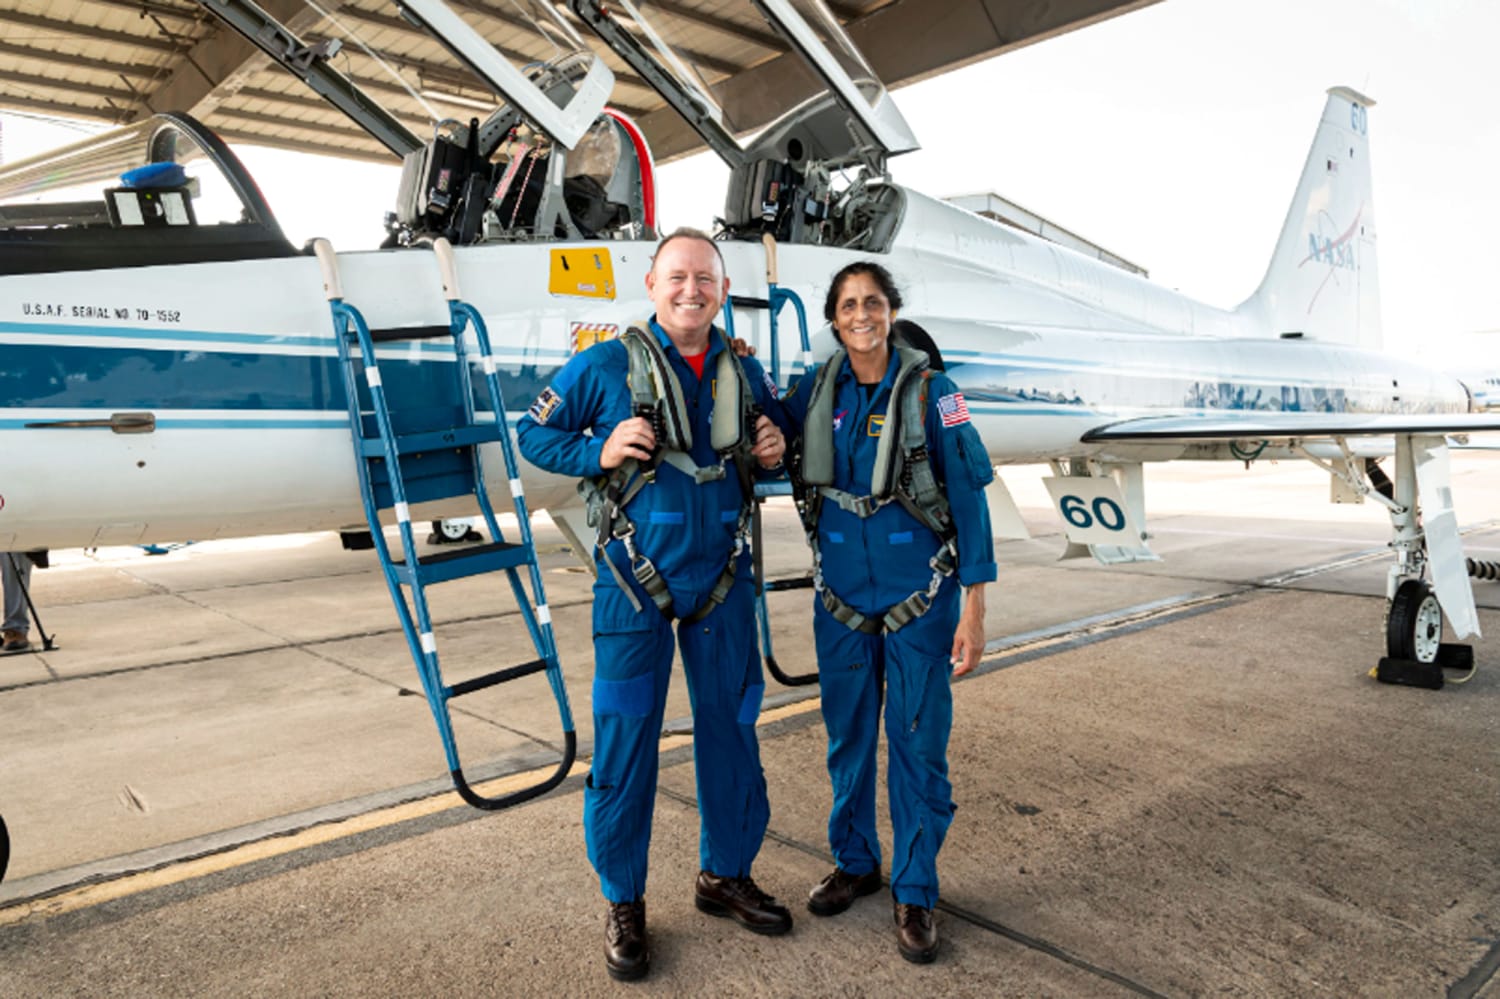 Lernen Sie die NASA-Astronauten kennen, die als erste mit einem Boeing-Raumschiff starten werden